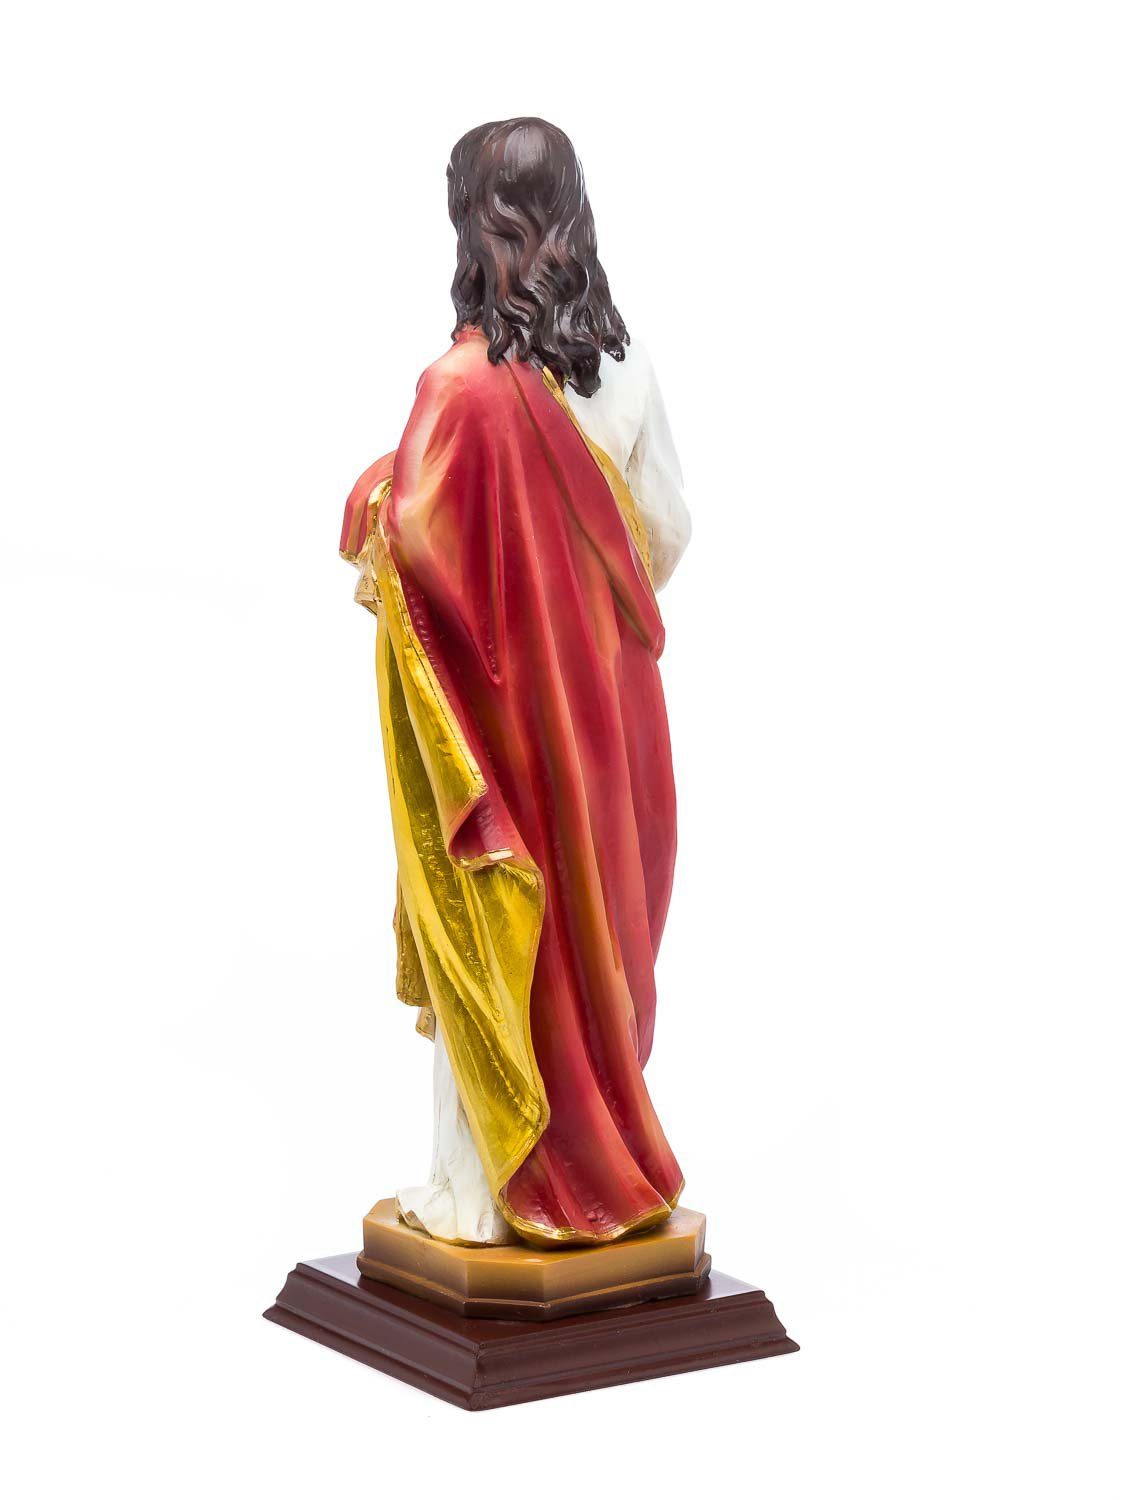 Aubaho Dekofigur Heiligenfigur Jesus Figur Skulptur Madonna sculpture 31cm